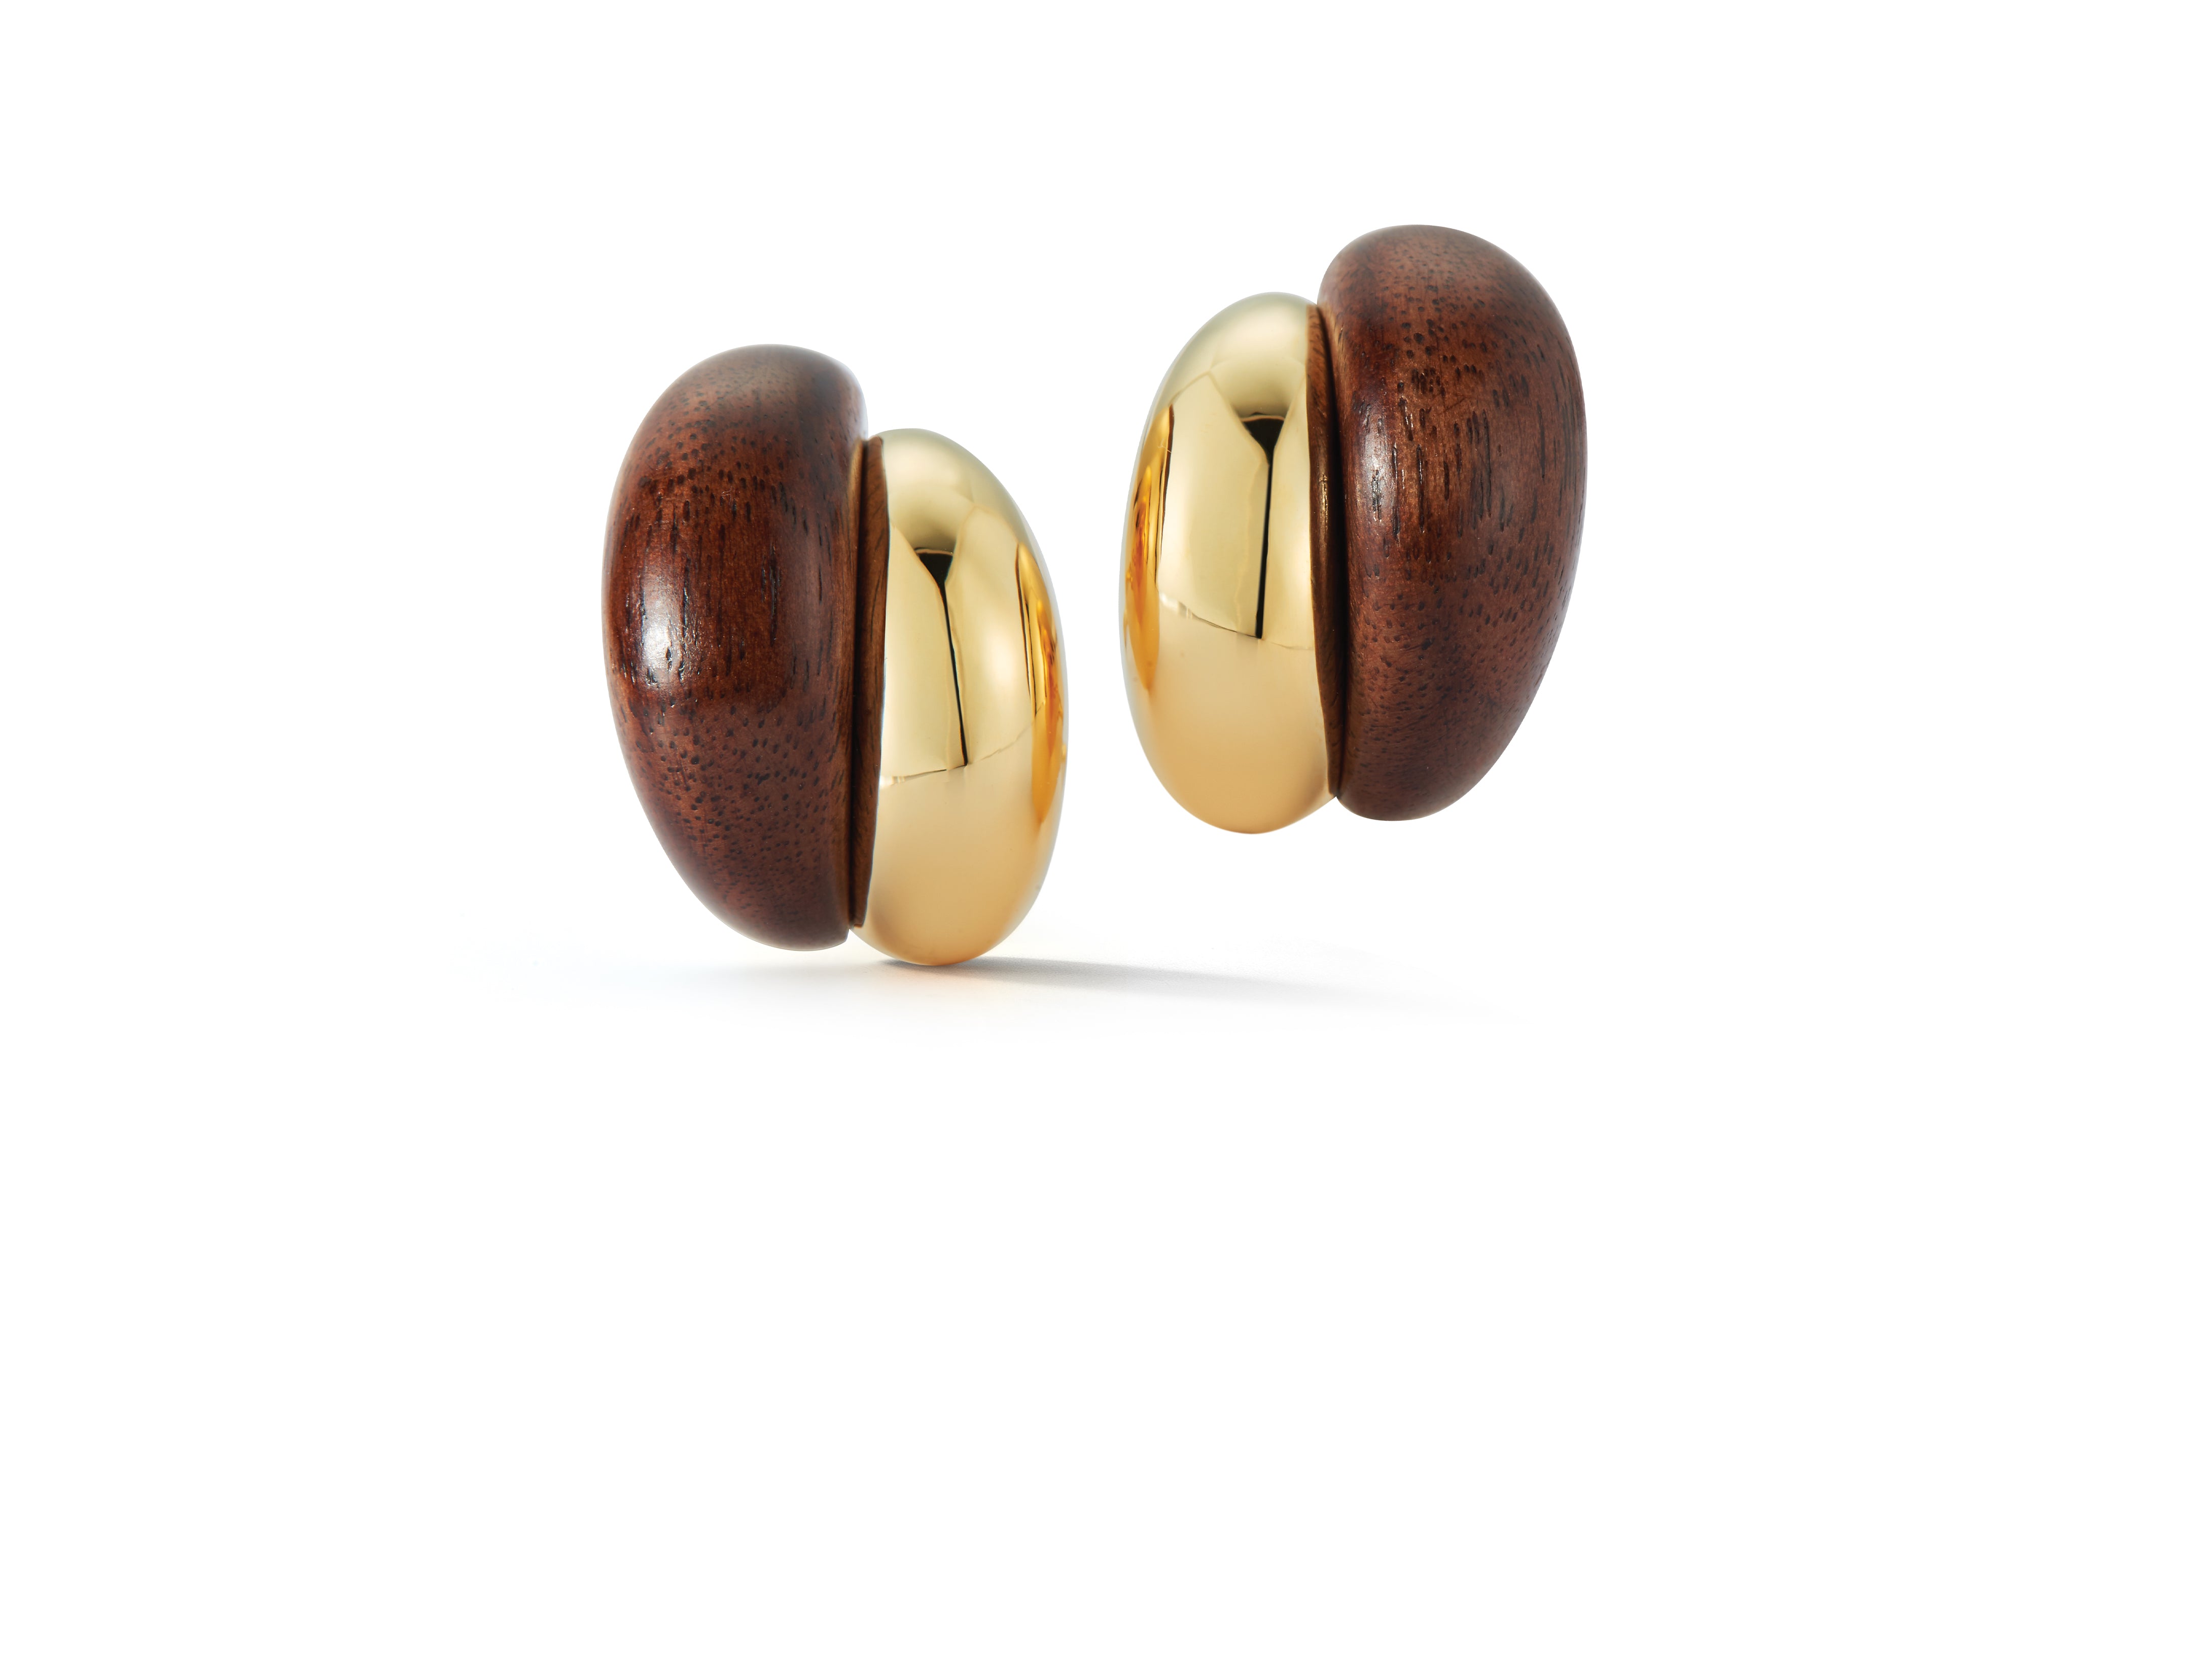 Silhouette Earrings in Wood